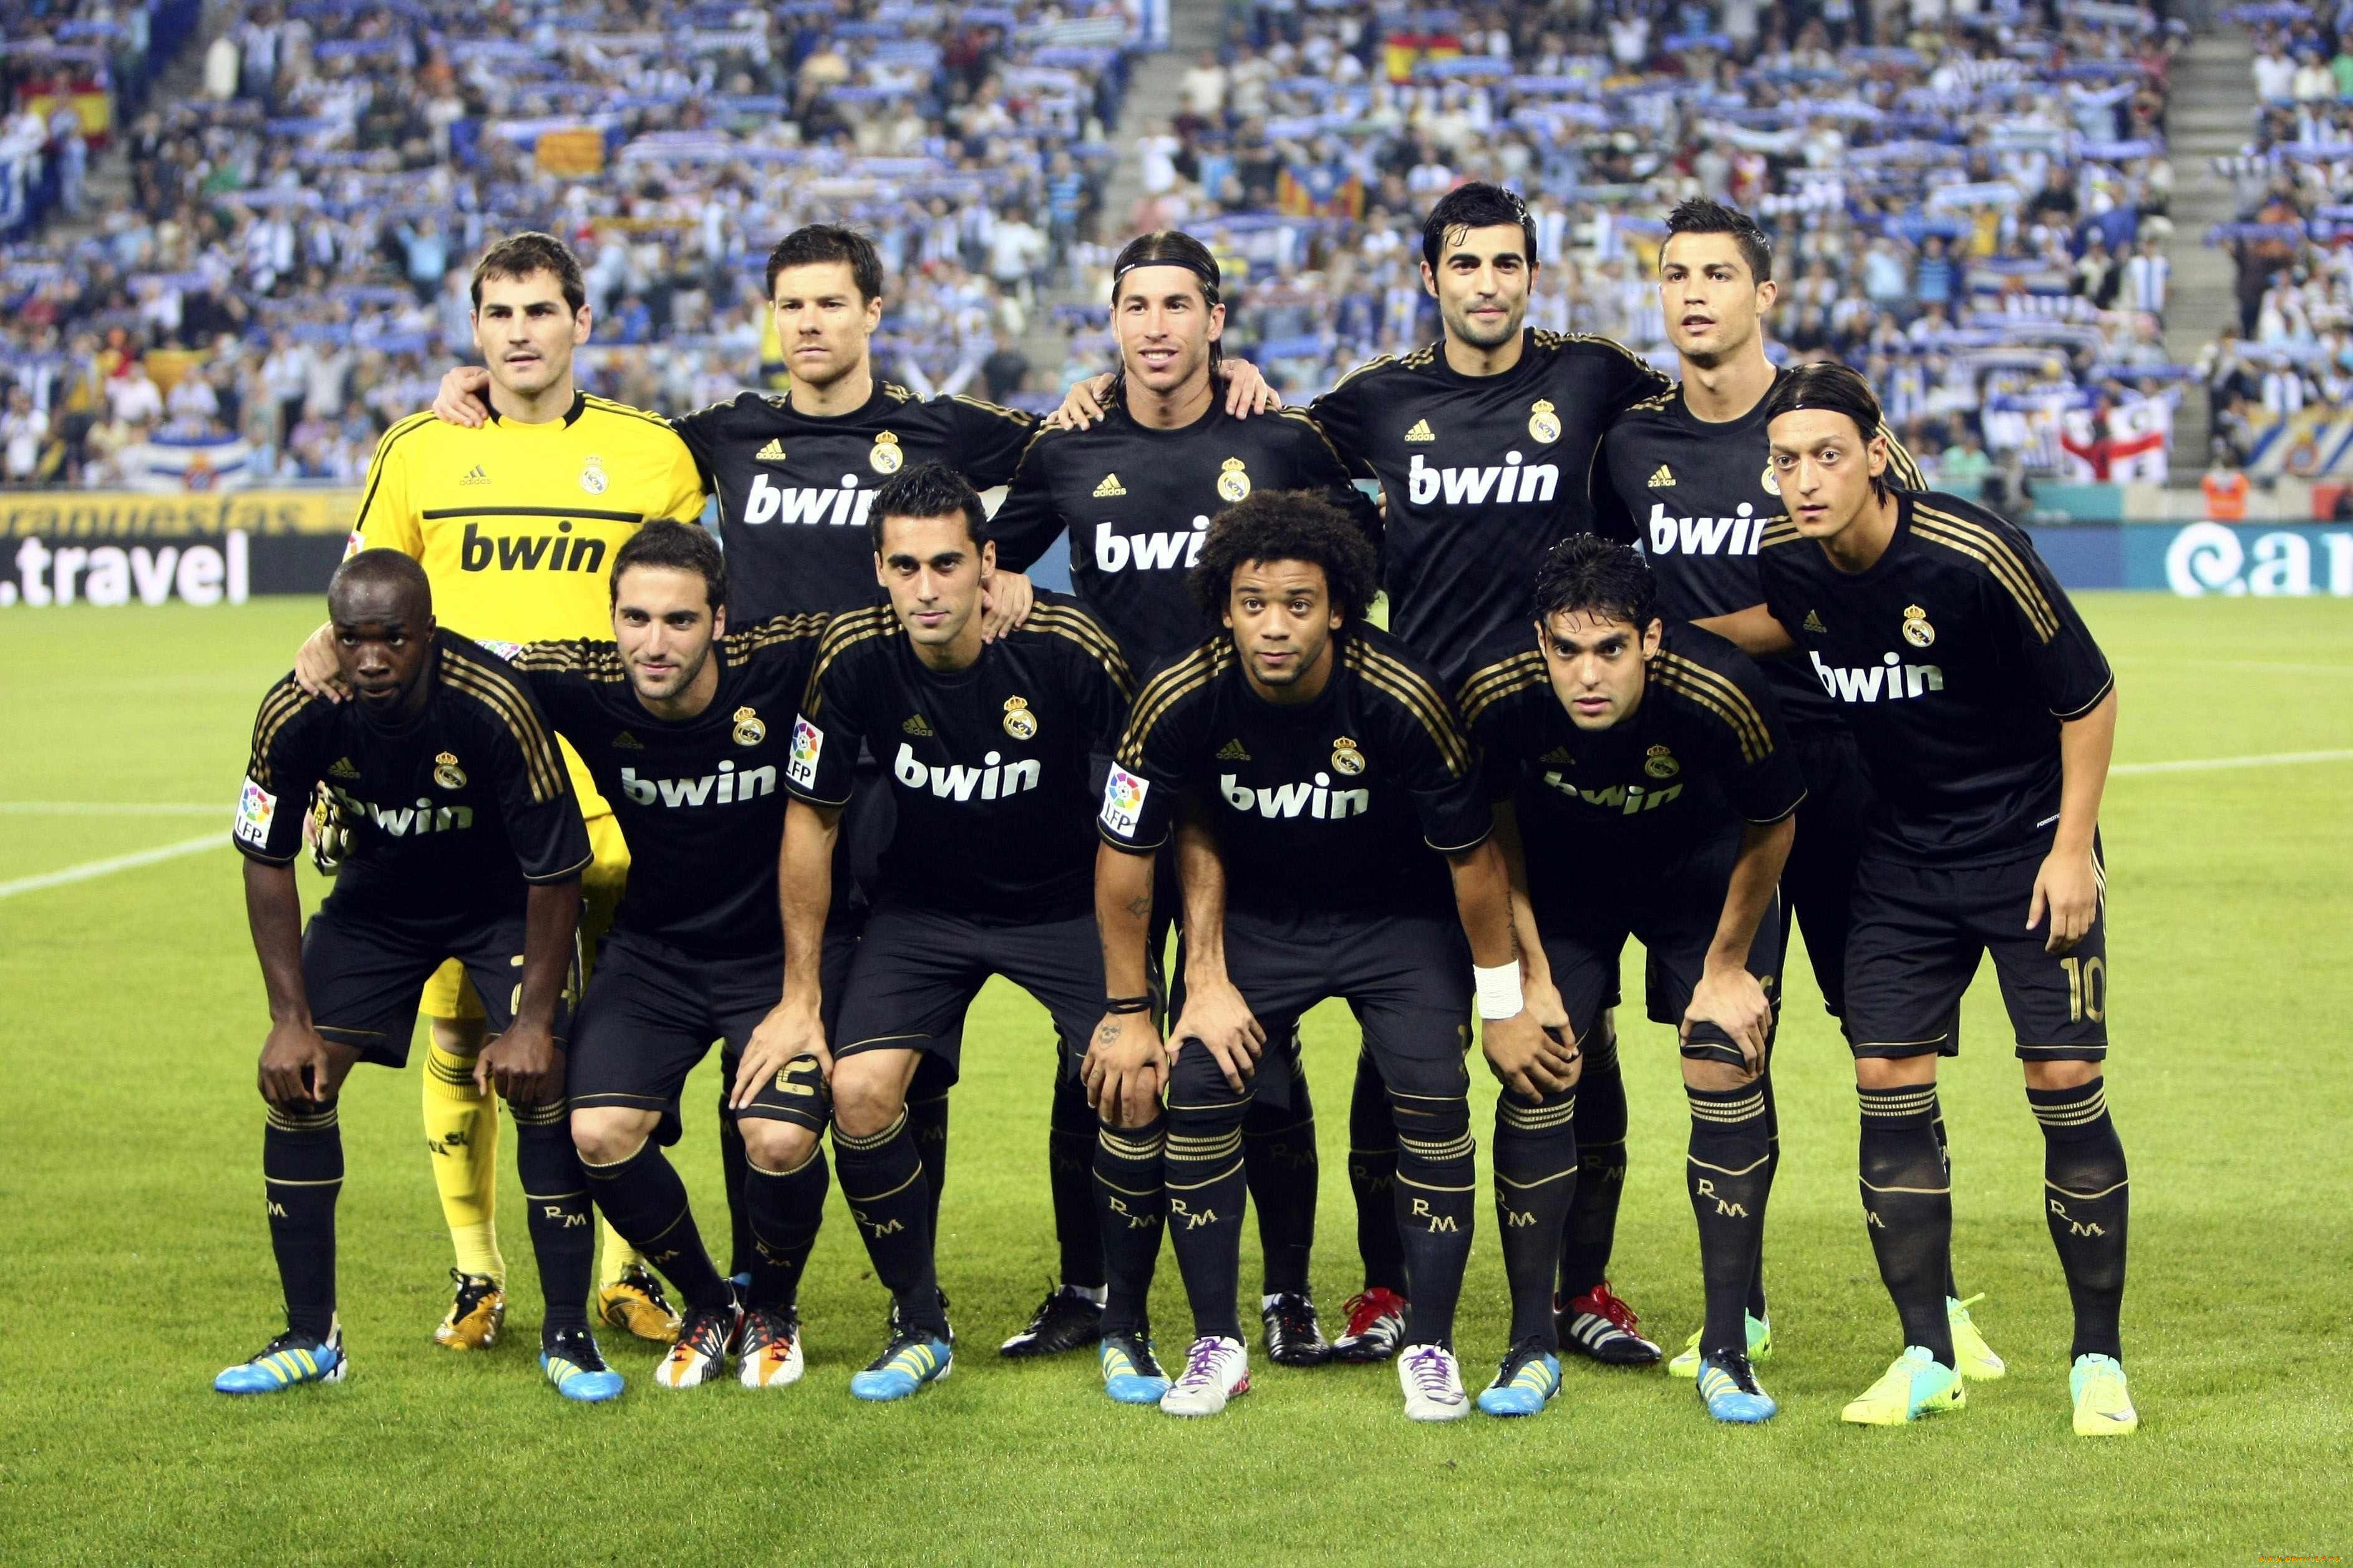 Футбольный клуб дал. Футбольная команда Реал Мадрид. Реал Мадрид команды ФК. Фотография футбольного клуба Реал Мадрид. Команда футбольной команды Реал Мадрид.